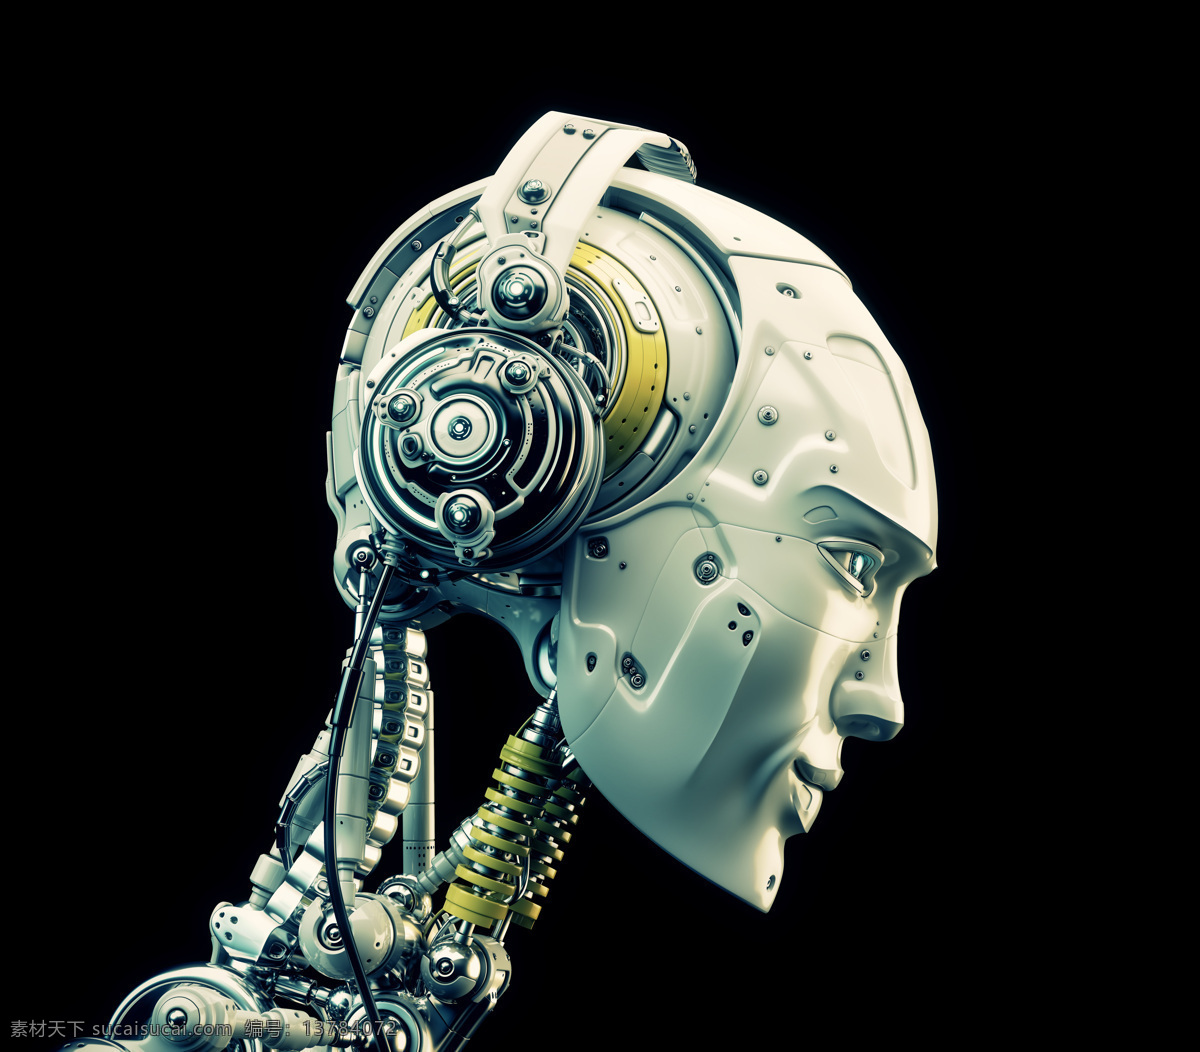 机器人 robot 科幻 机械人 科幻世界 未来世界 科幻设计 小机器人 外星人 智能机器人 人工智能 3d作品 3d设计